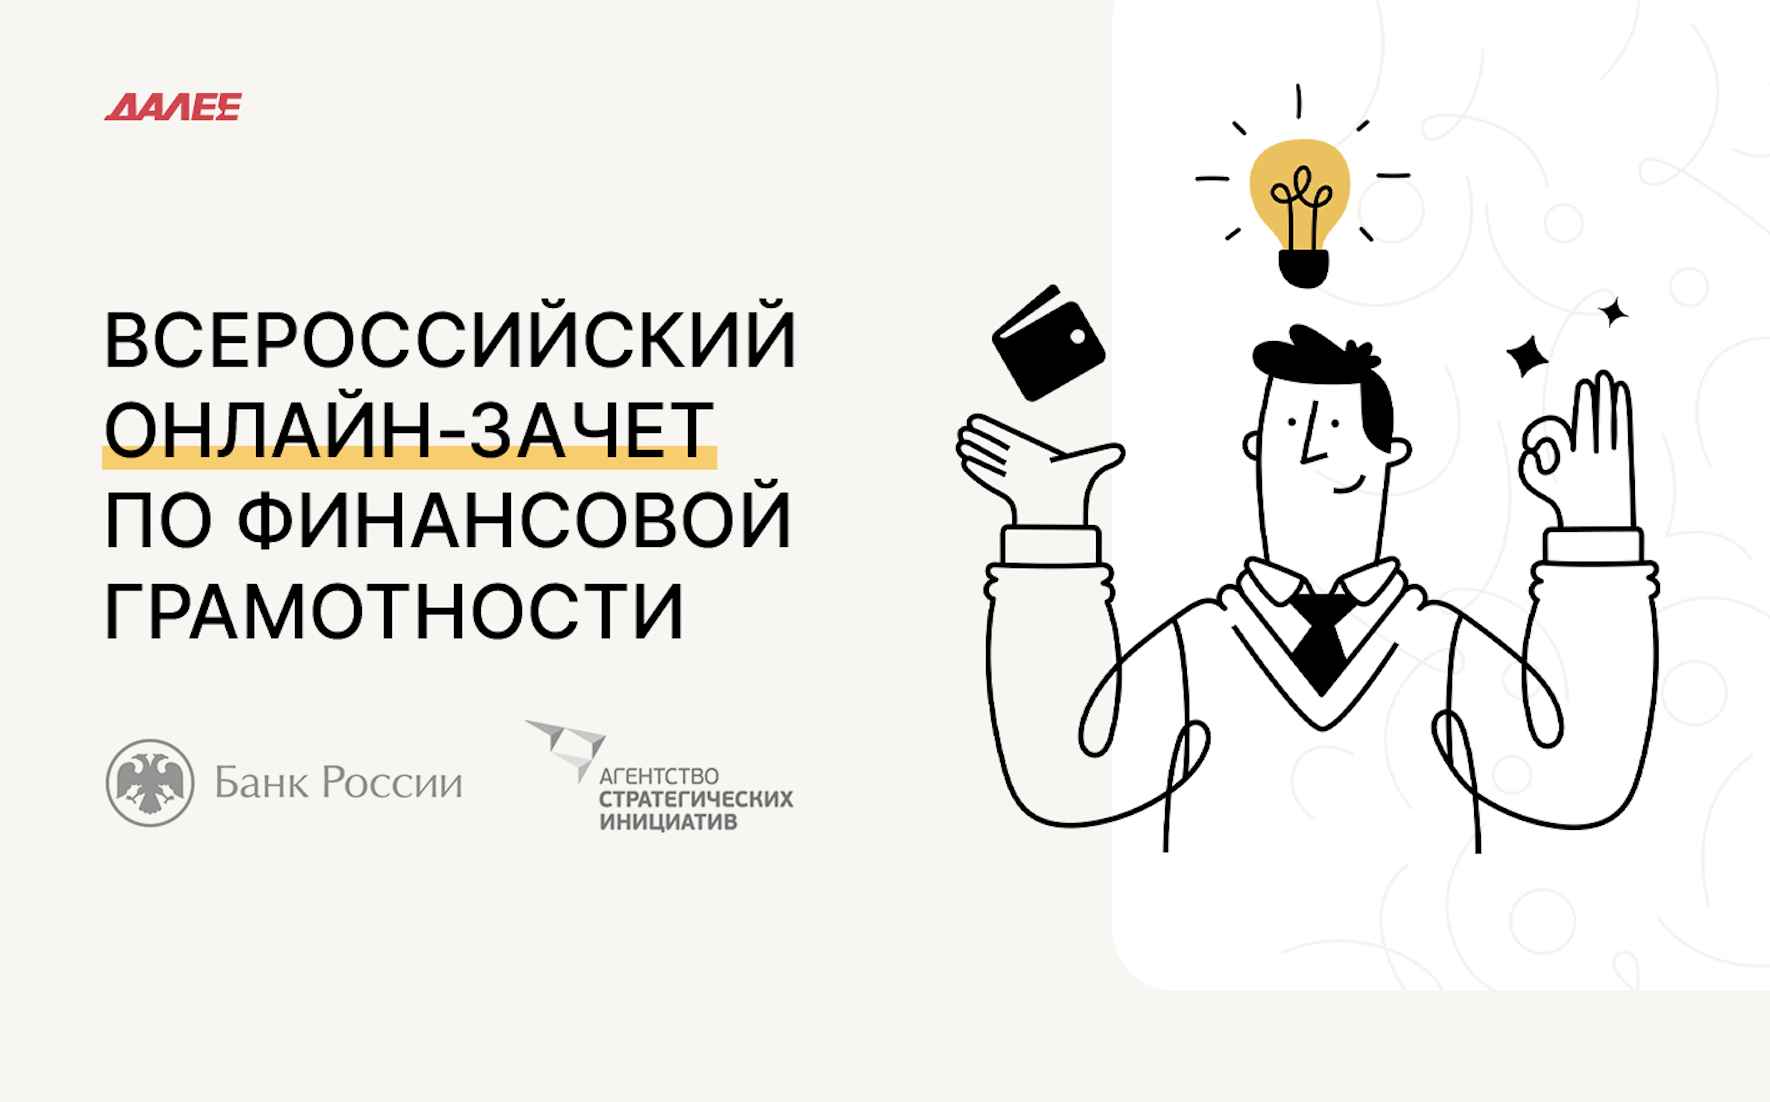 Всероссийский онлайн-зачет по финансовой грамотности — проект с суточной посещаемостью ~230 000 человек 